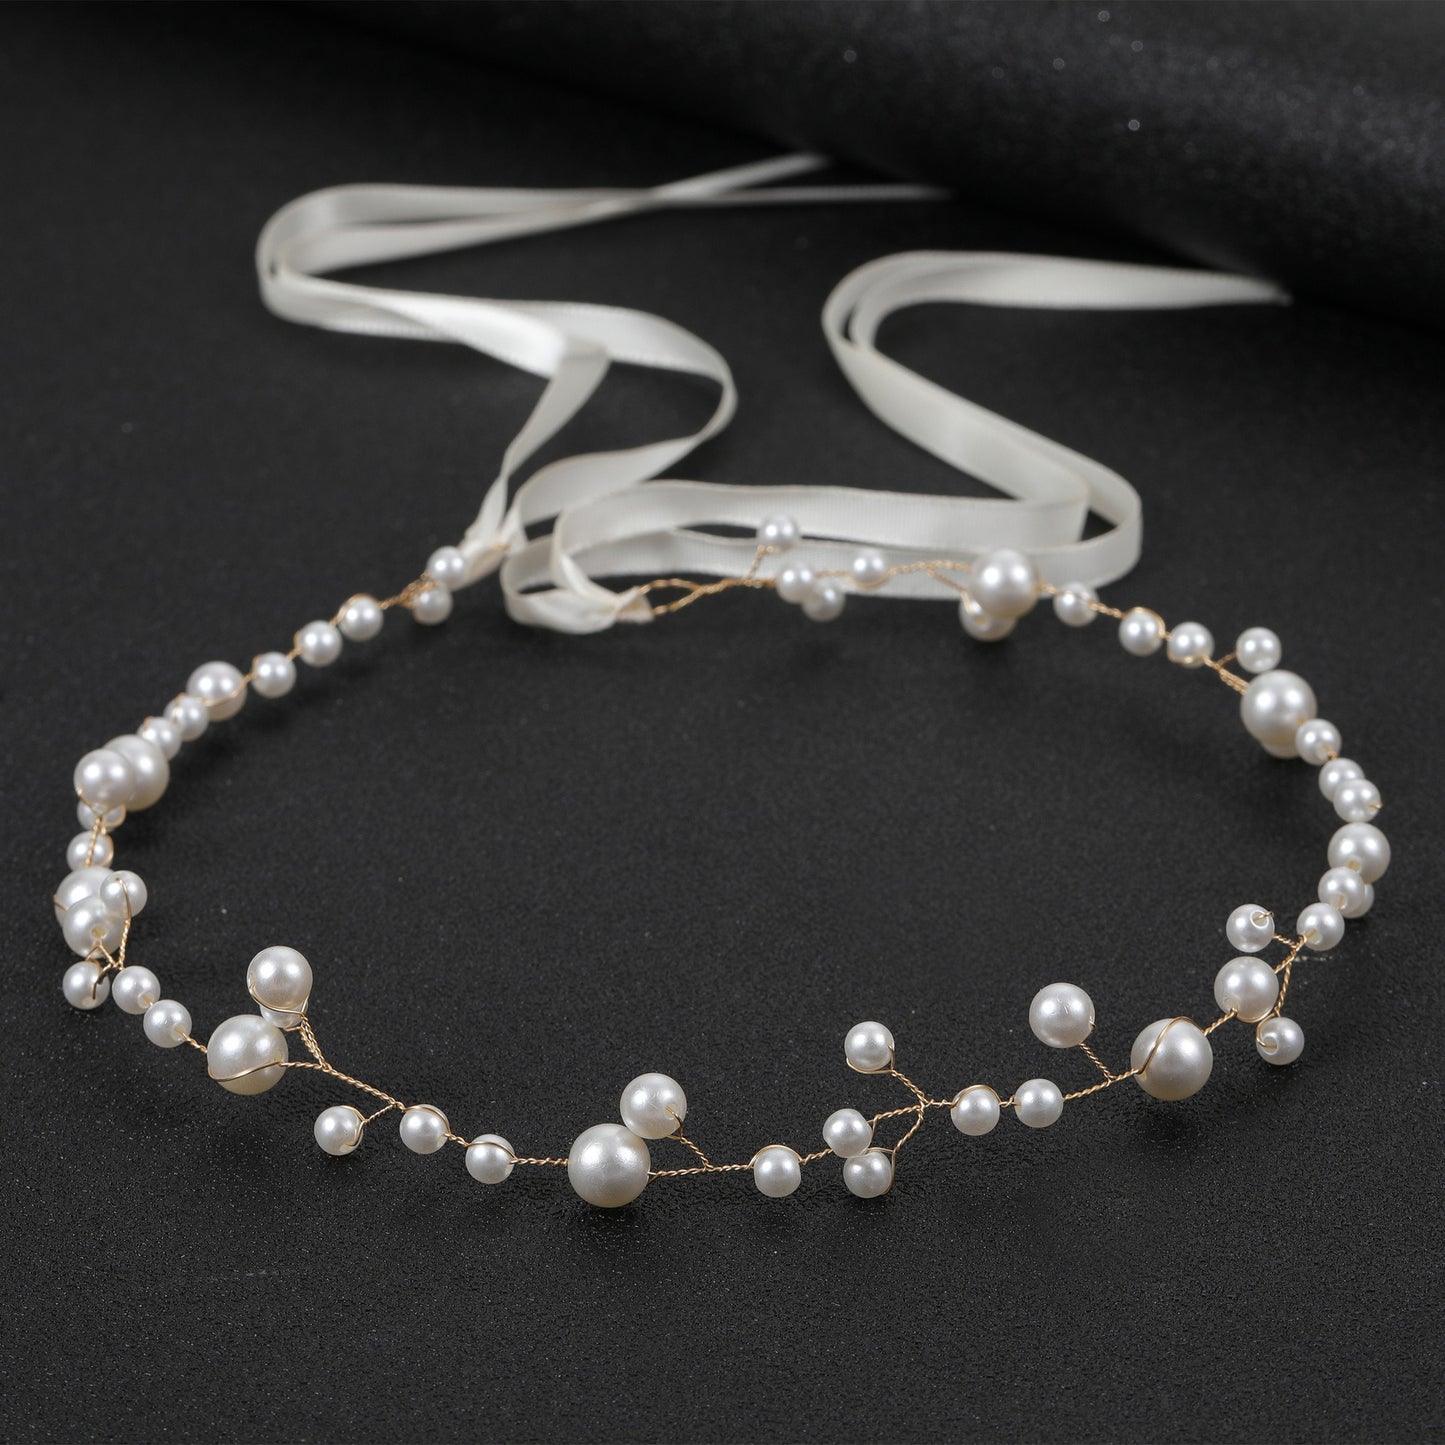 Bride Wedding Hair Accessories Simple Pearl Soft Chain Headband